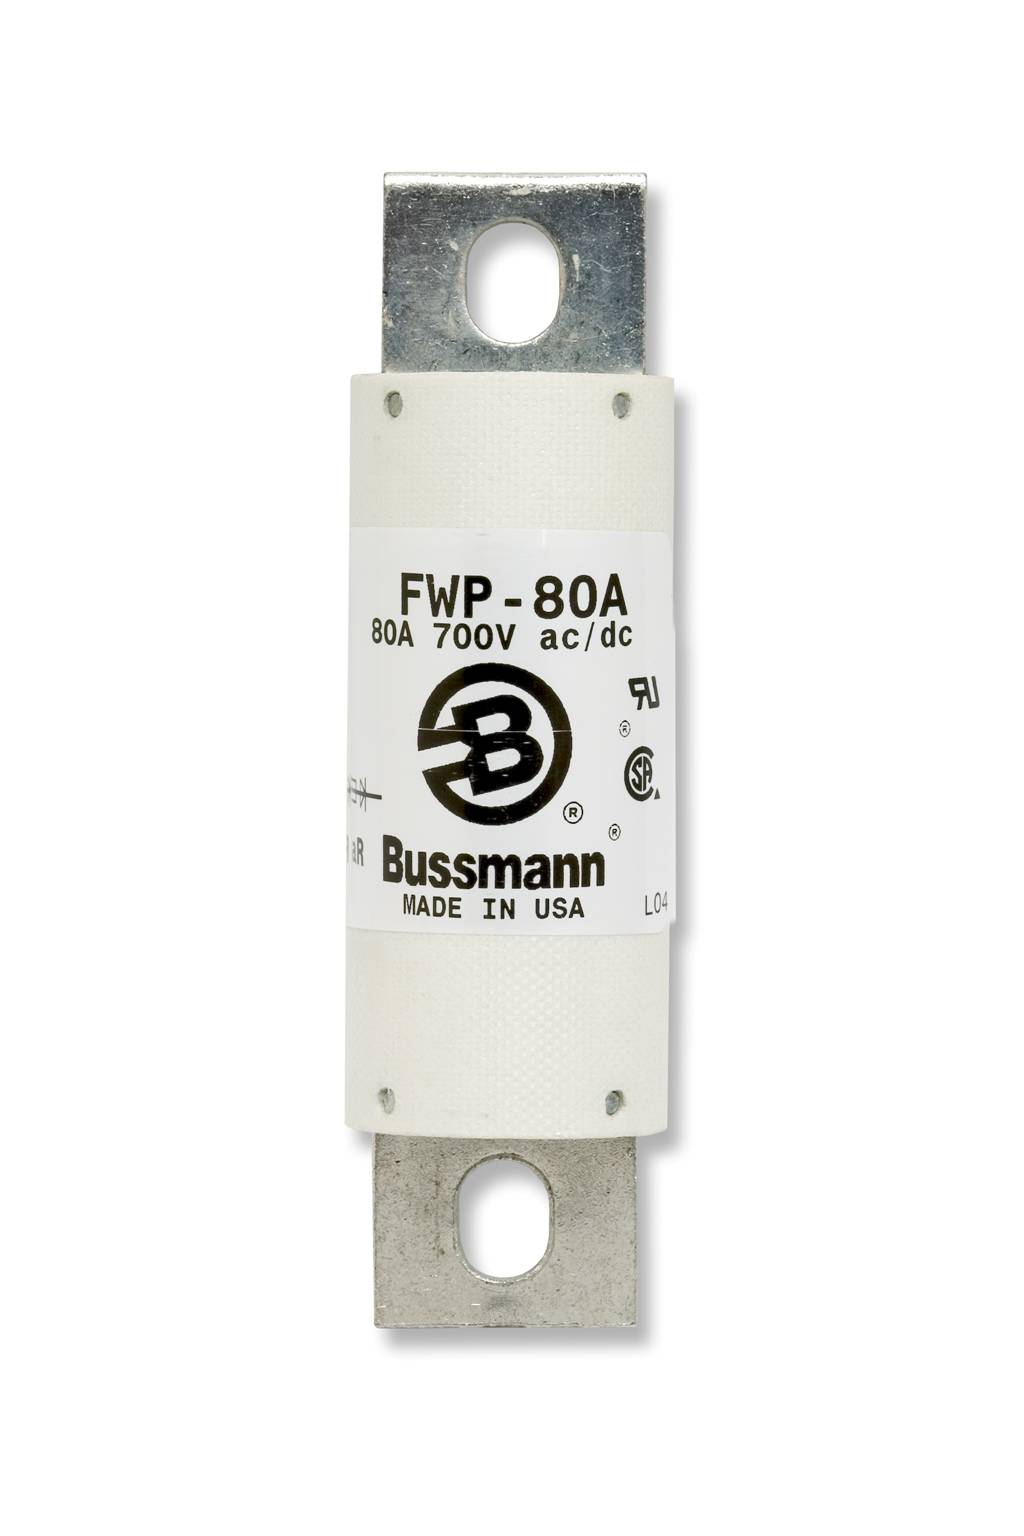 Part# FWP-200A  Manufacturer BUSSMANN  Part Type 700 Volt Fuse